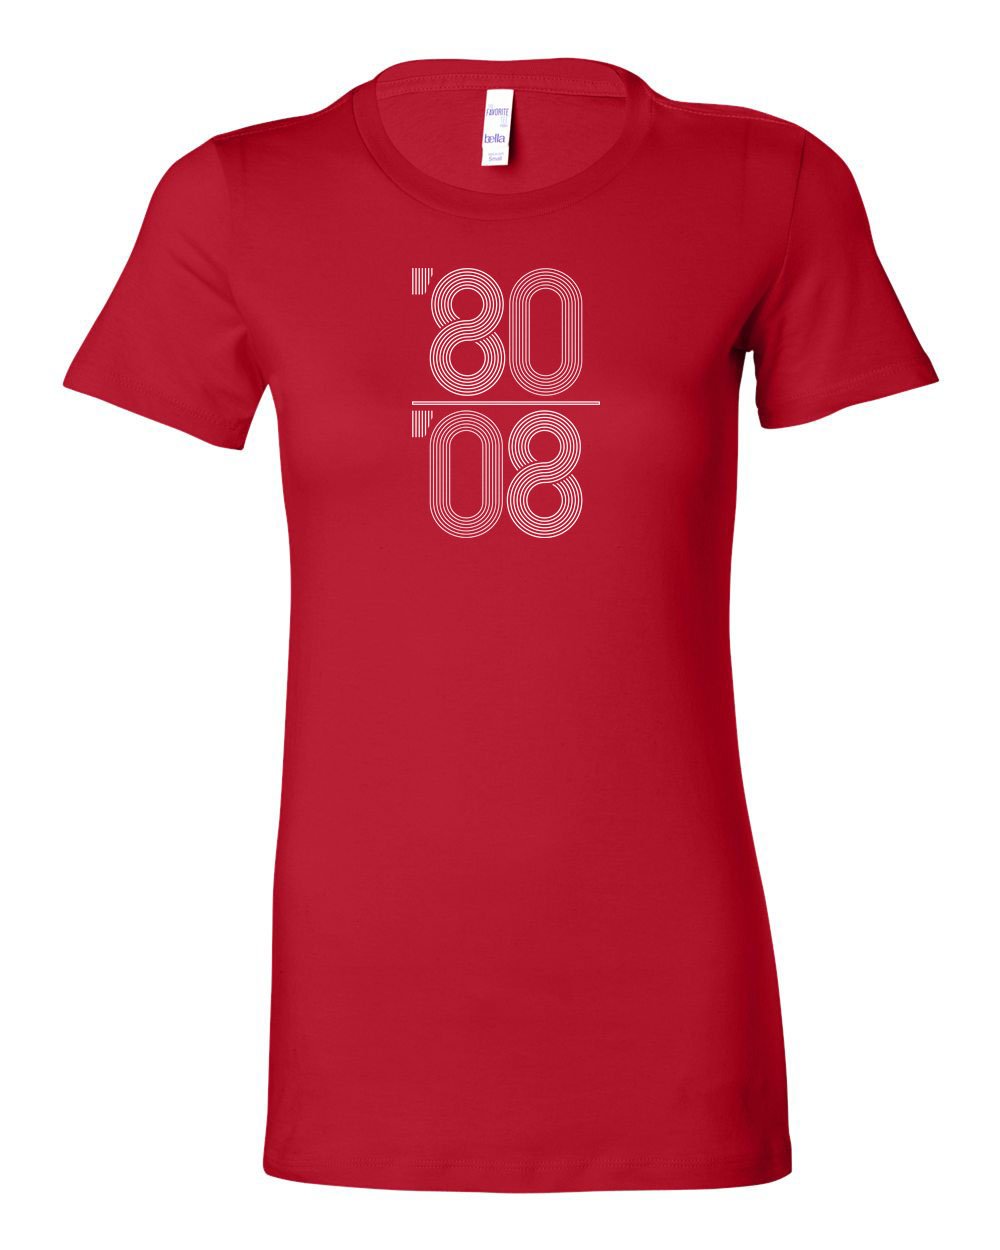 80-08 LADIES Junior-Fit T-Shirt